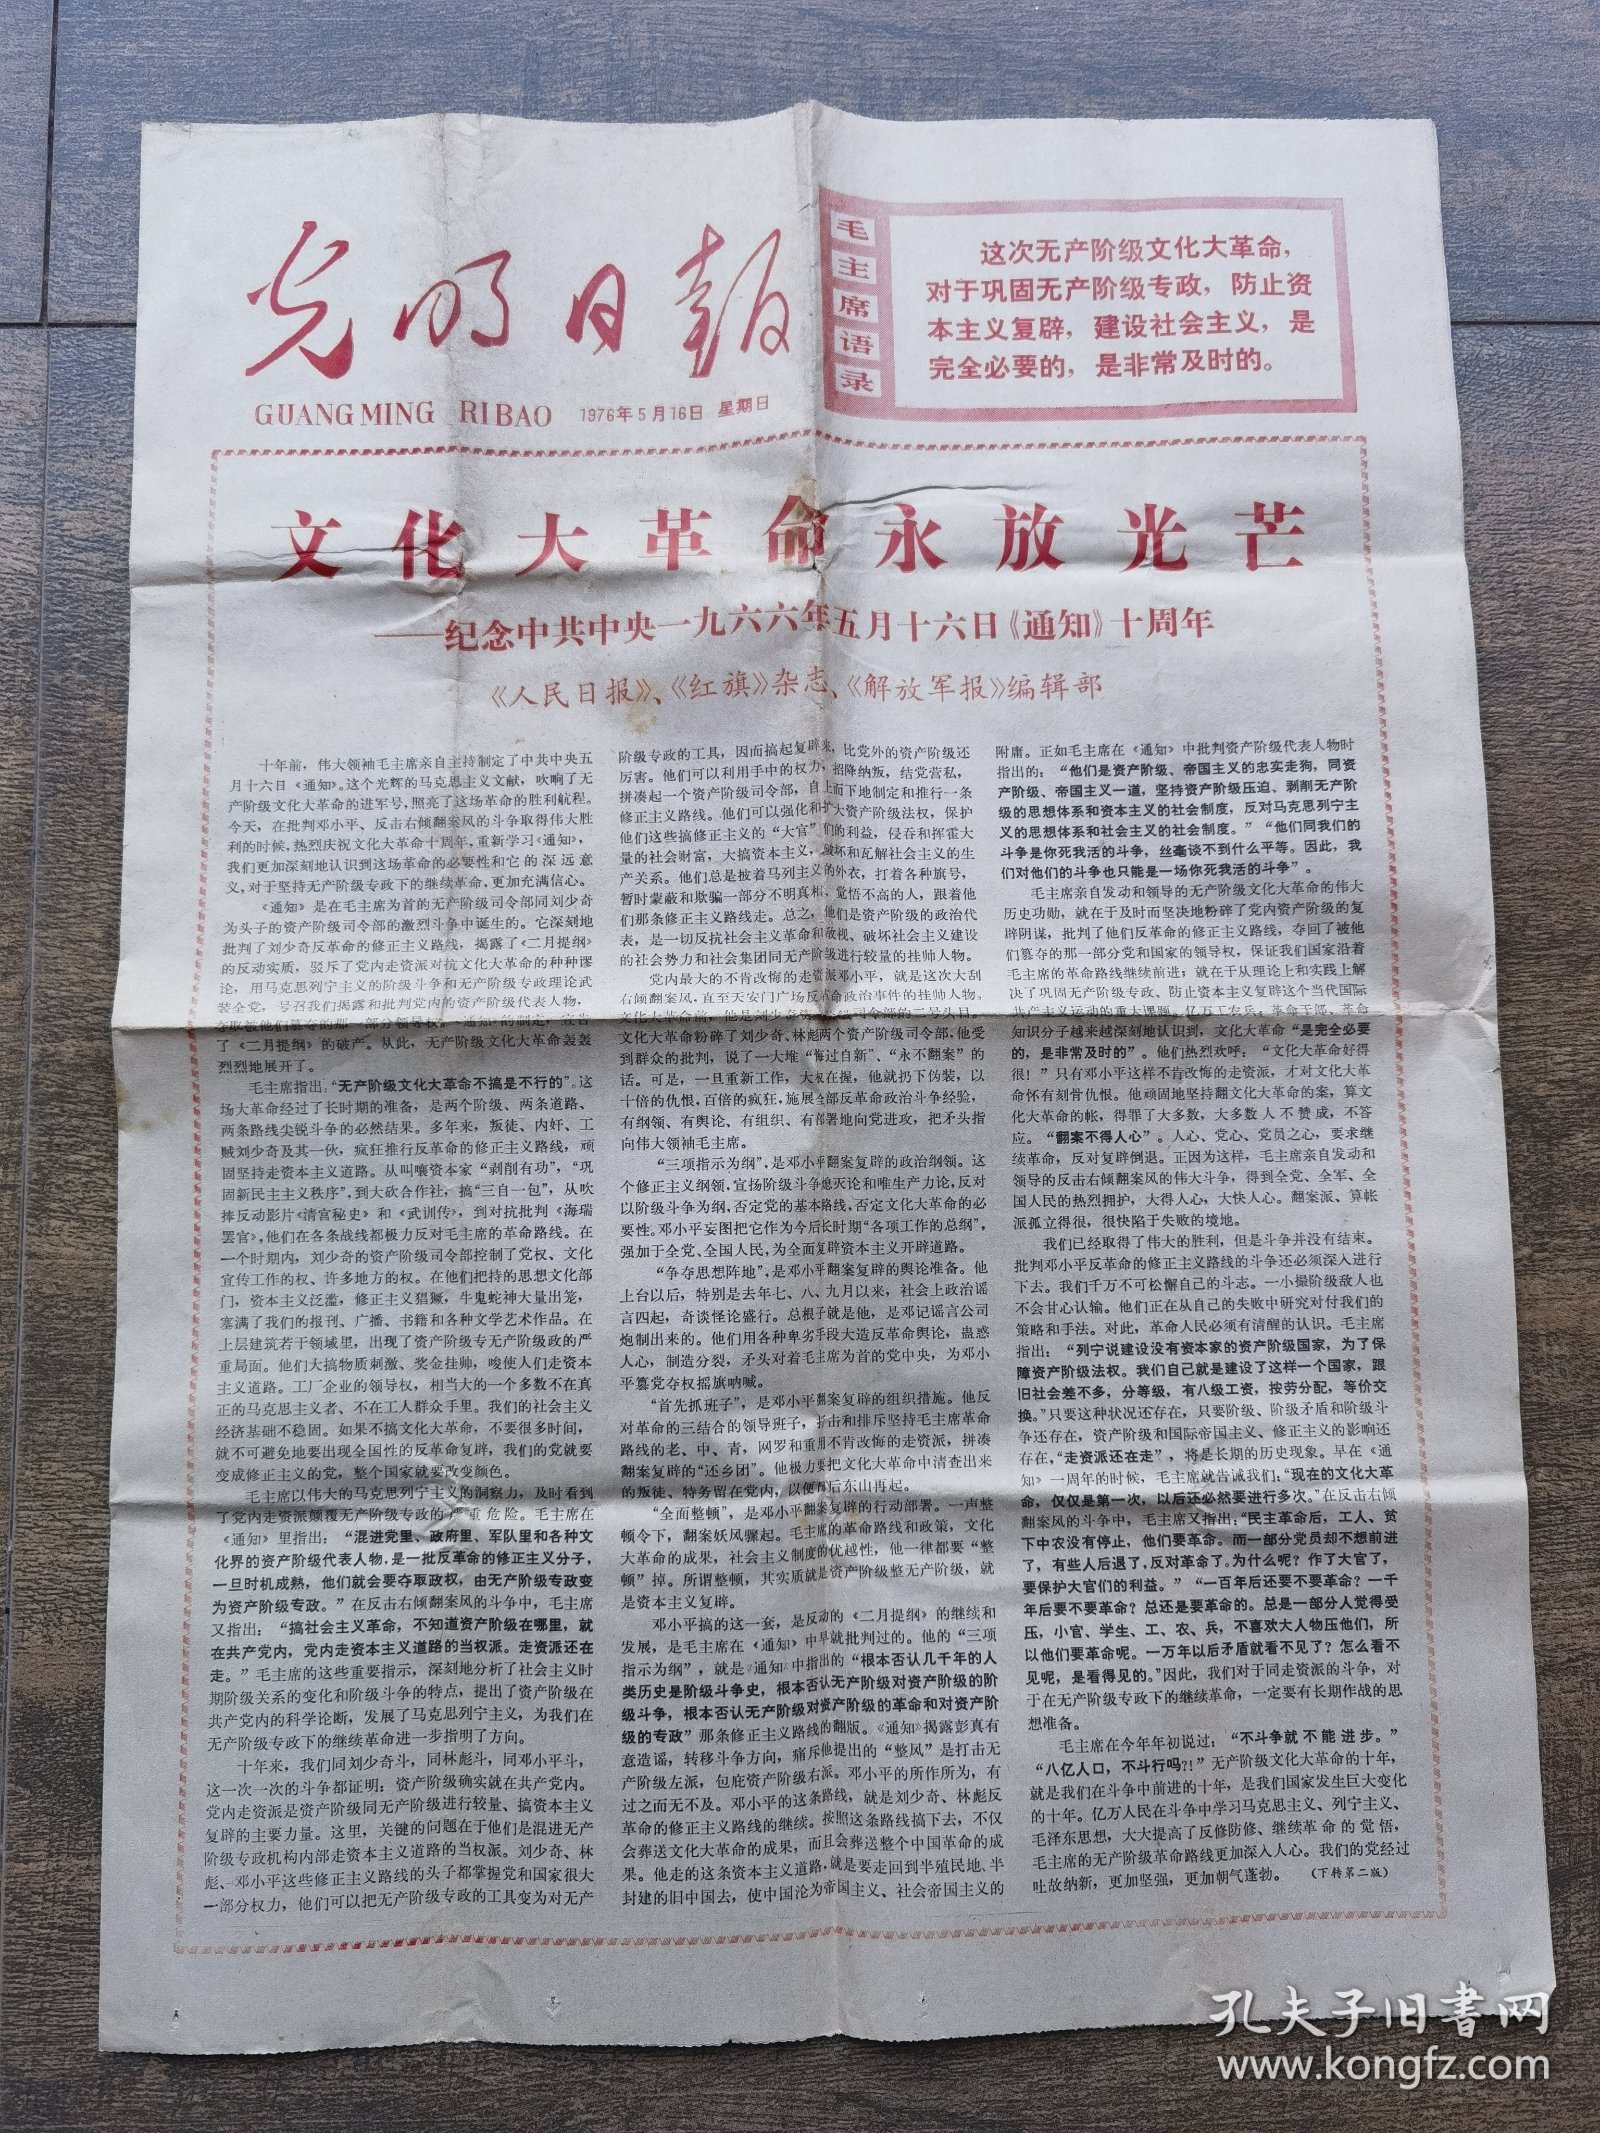 1976年5月16日光明日报文化大革命永放光芒纪念通知十周年